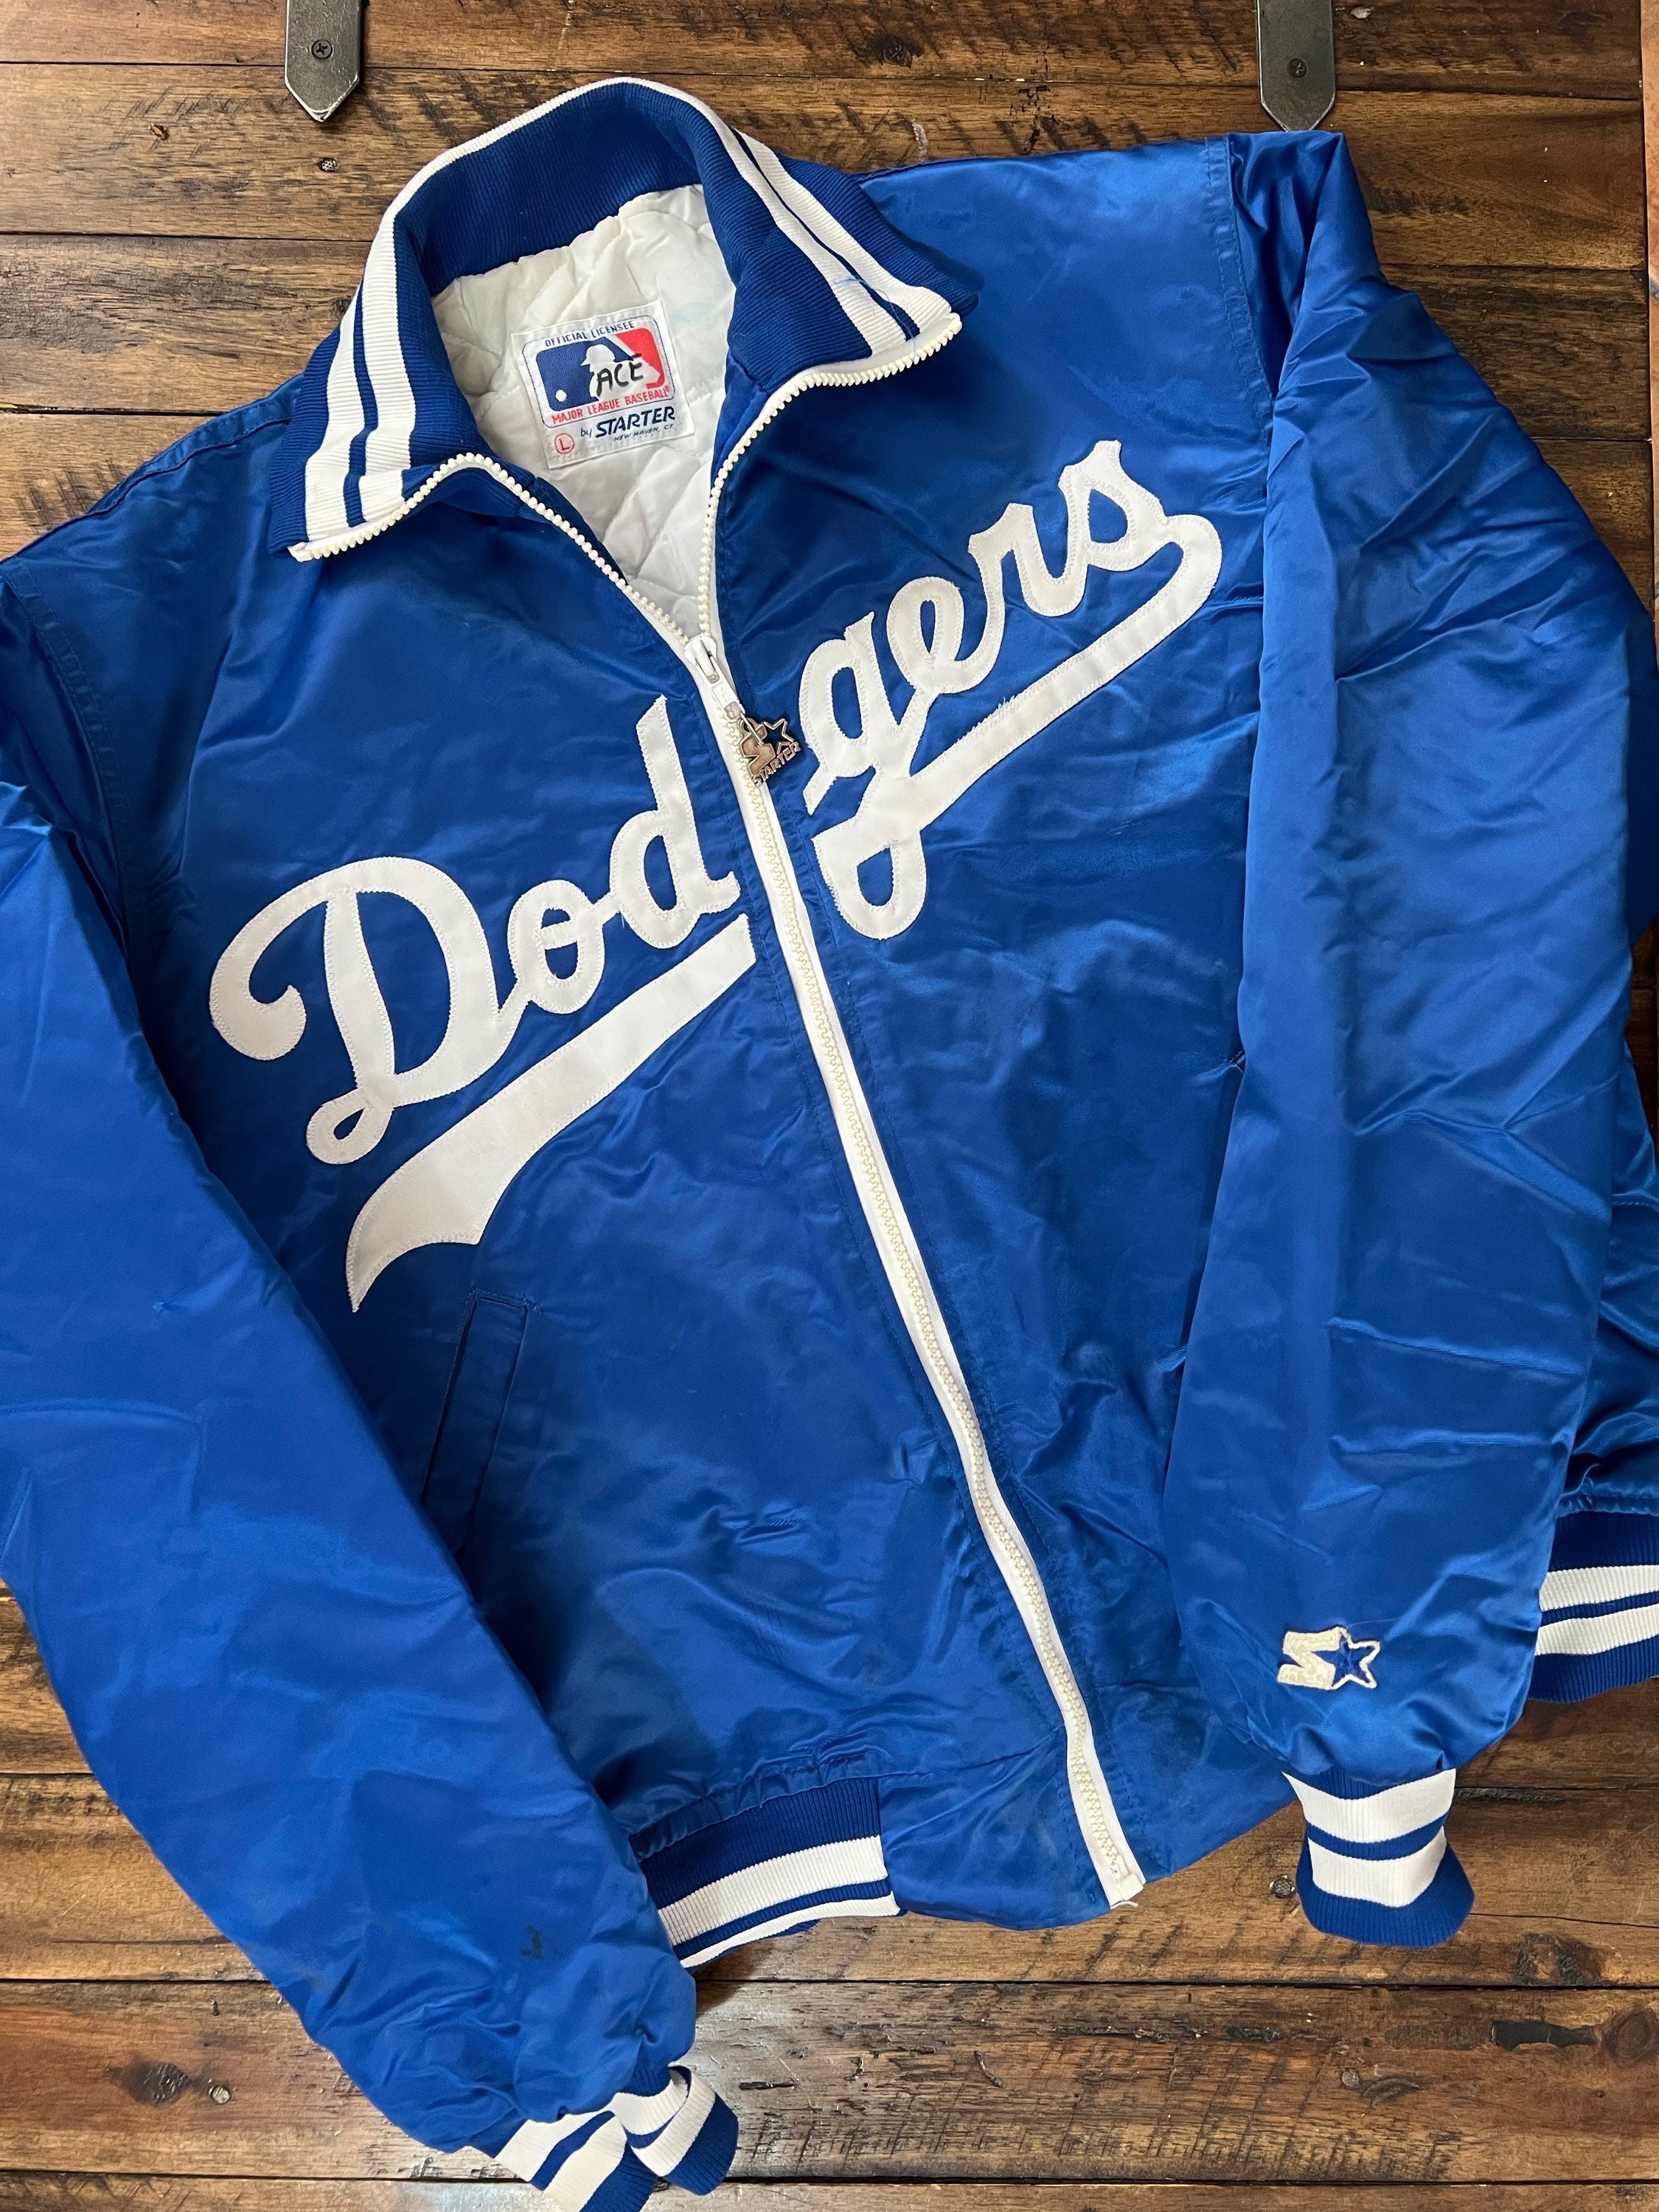 Vintage 80s Los Angeles Dodgers Starter Jacket